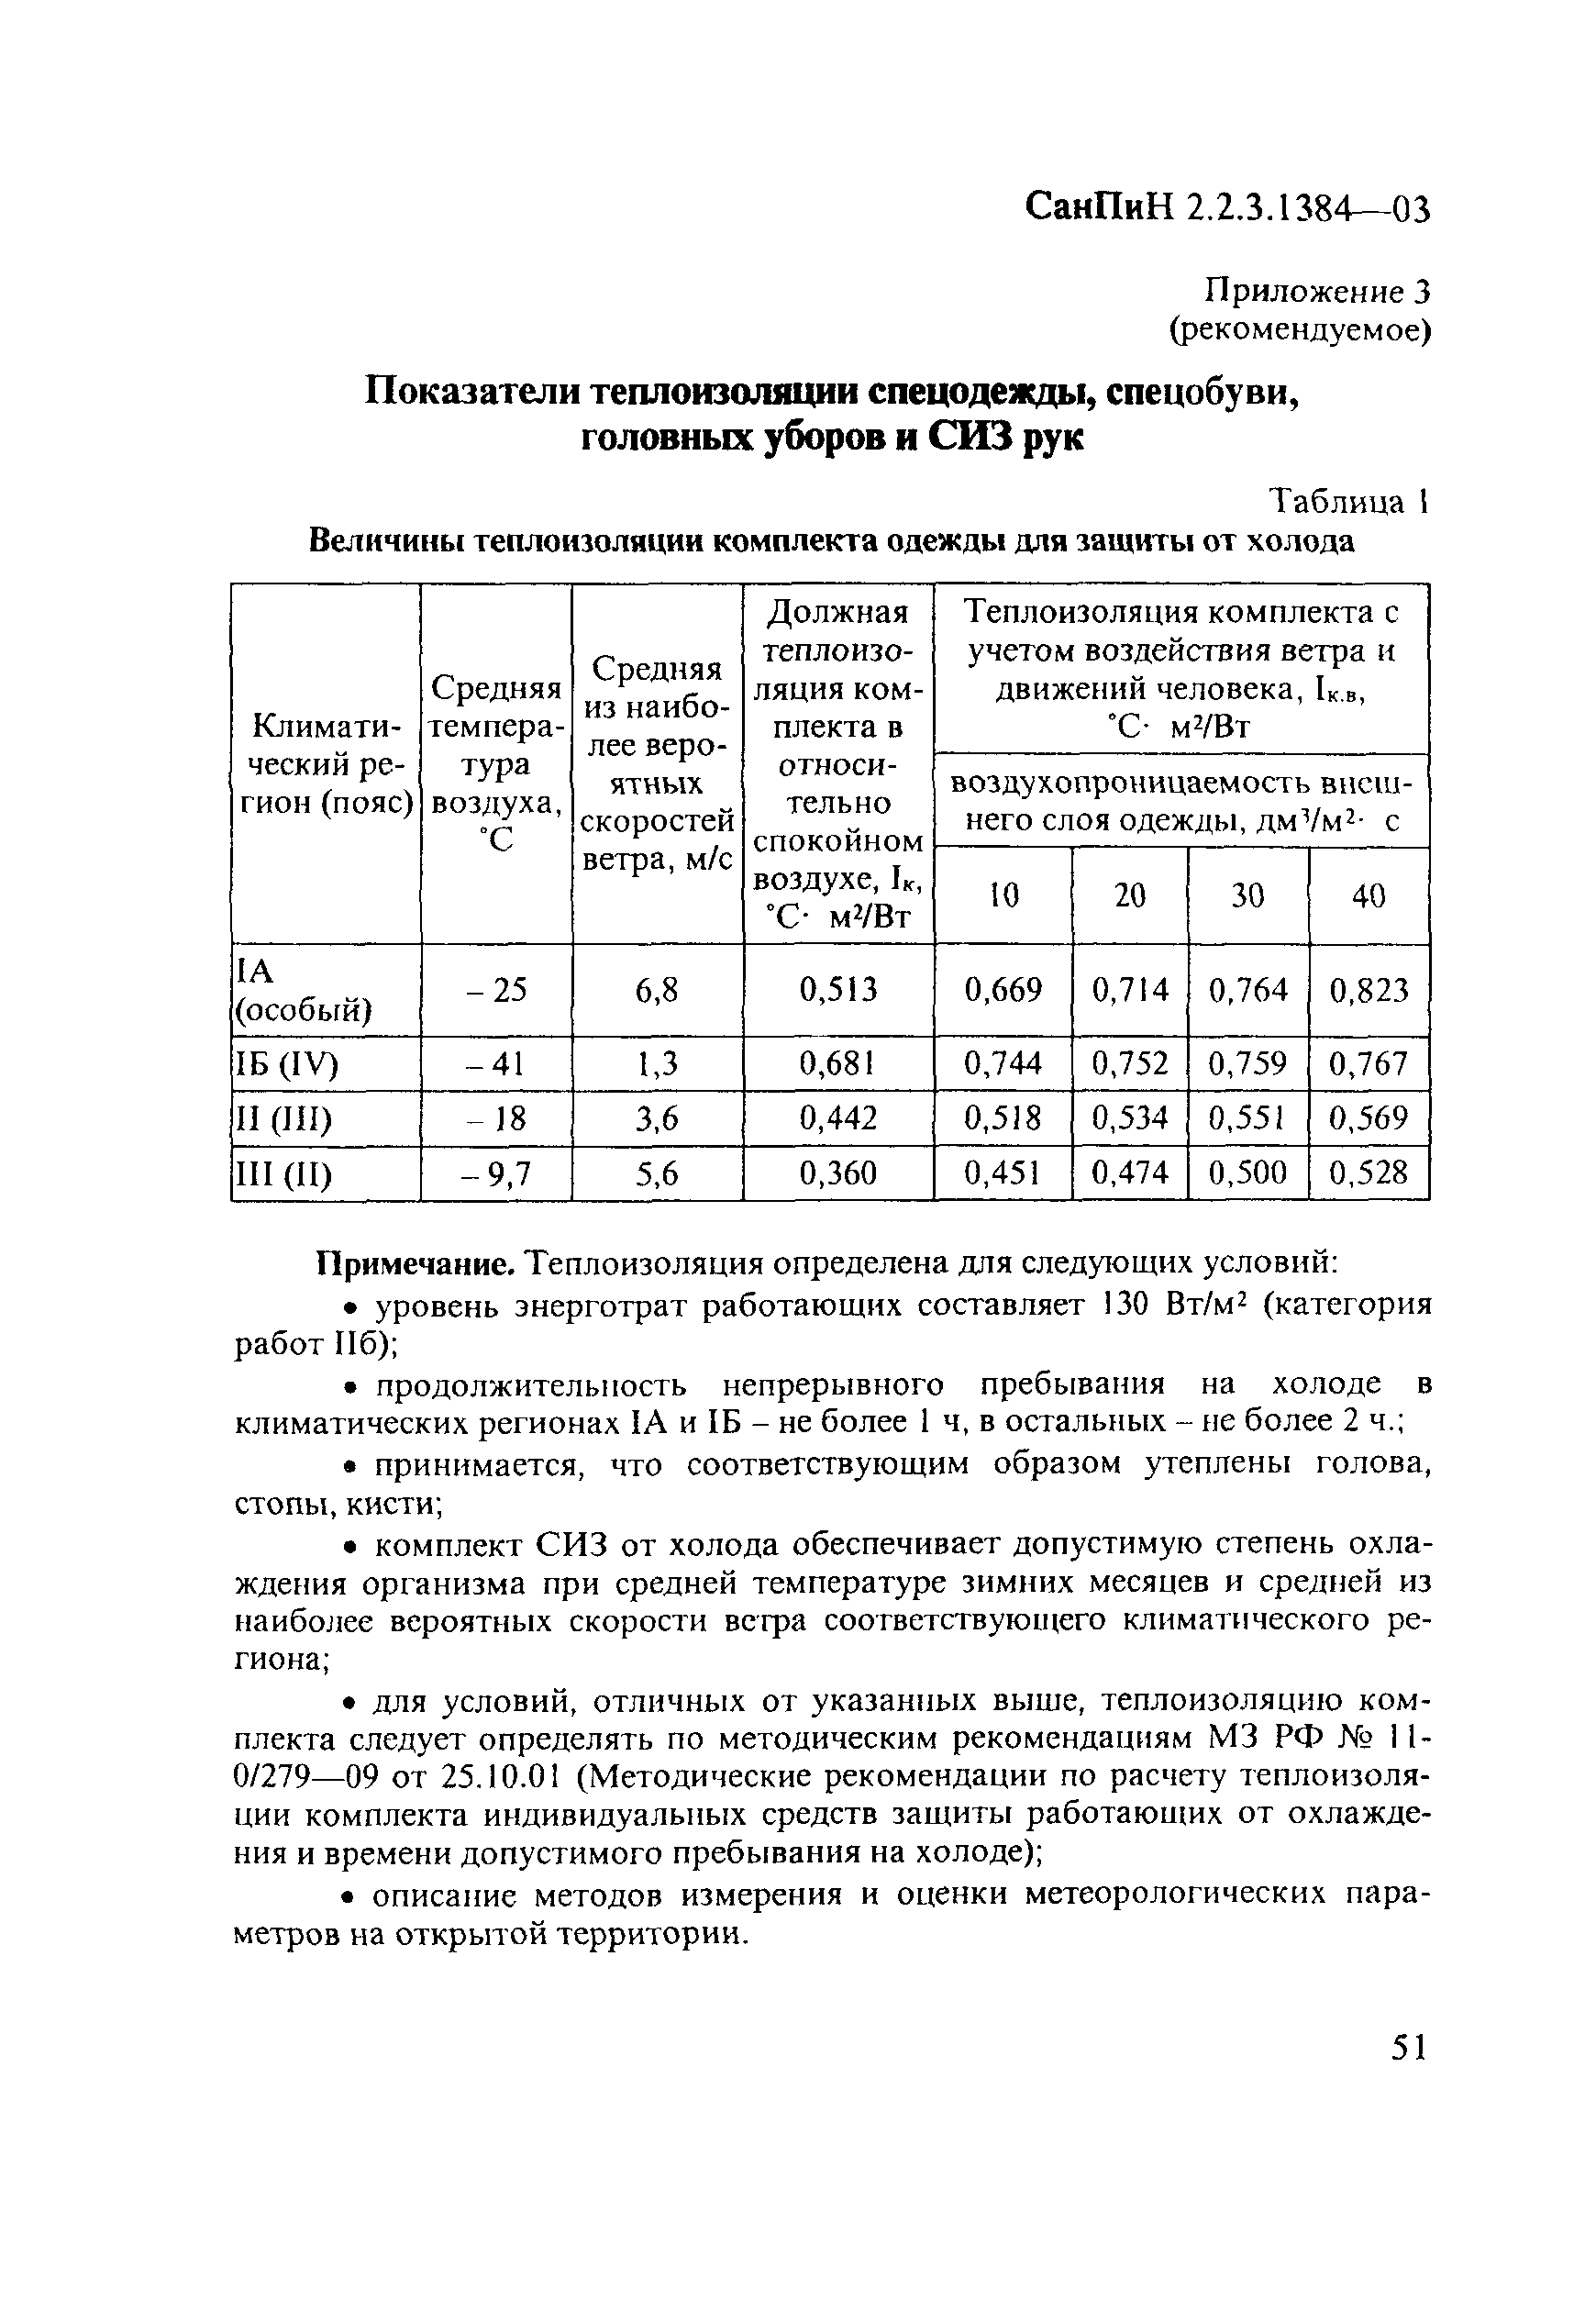 СанПиН 2.2.3.1384-03